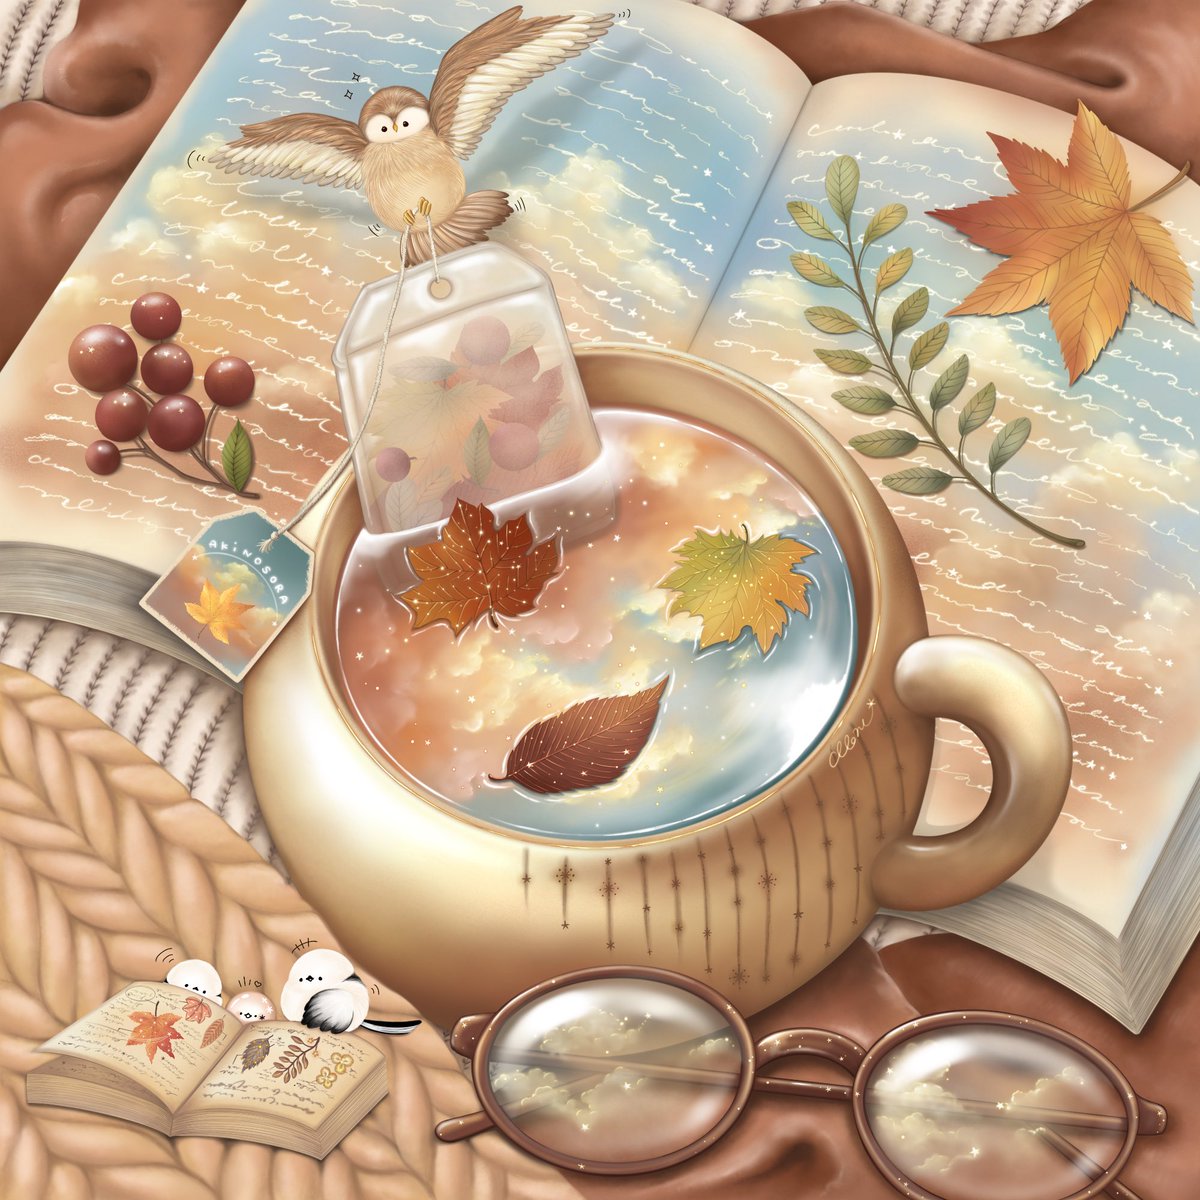 「秋晴れ空の紅茶#イラスト 」|moruのイラスト